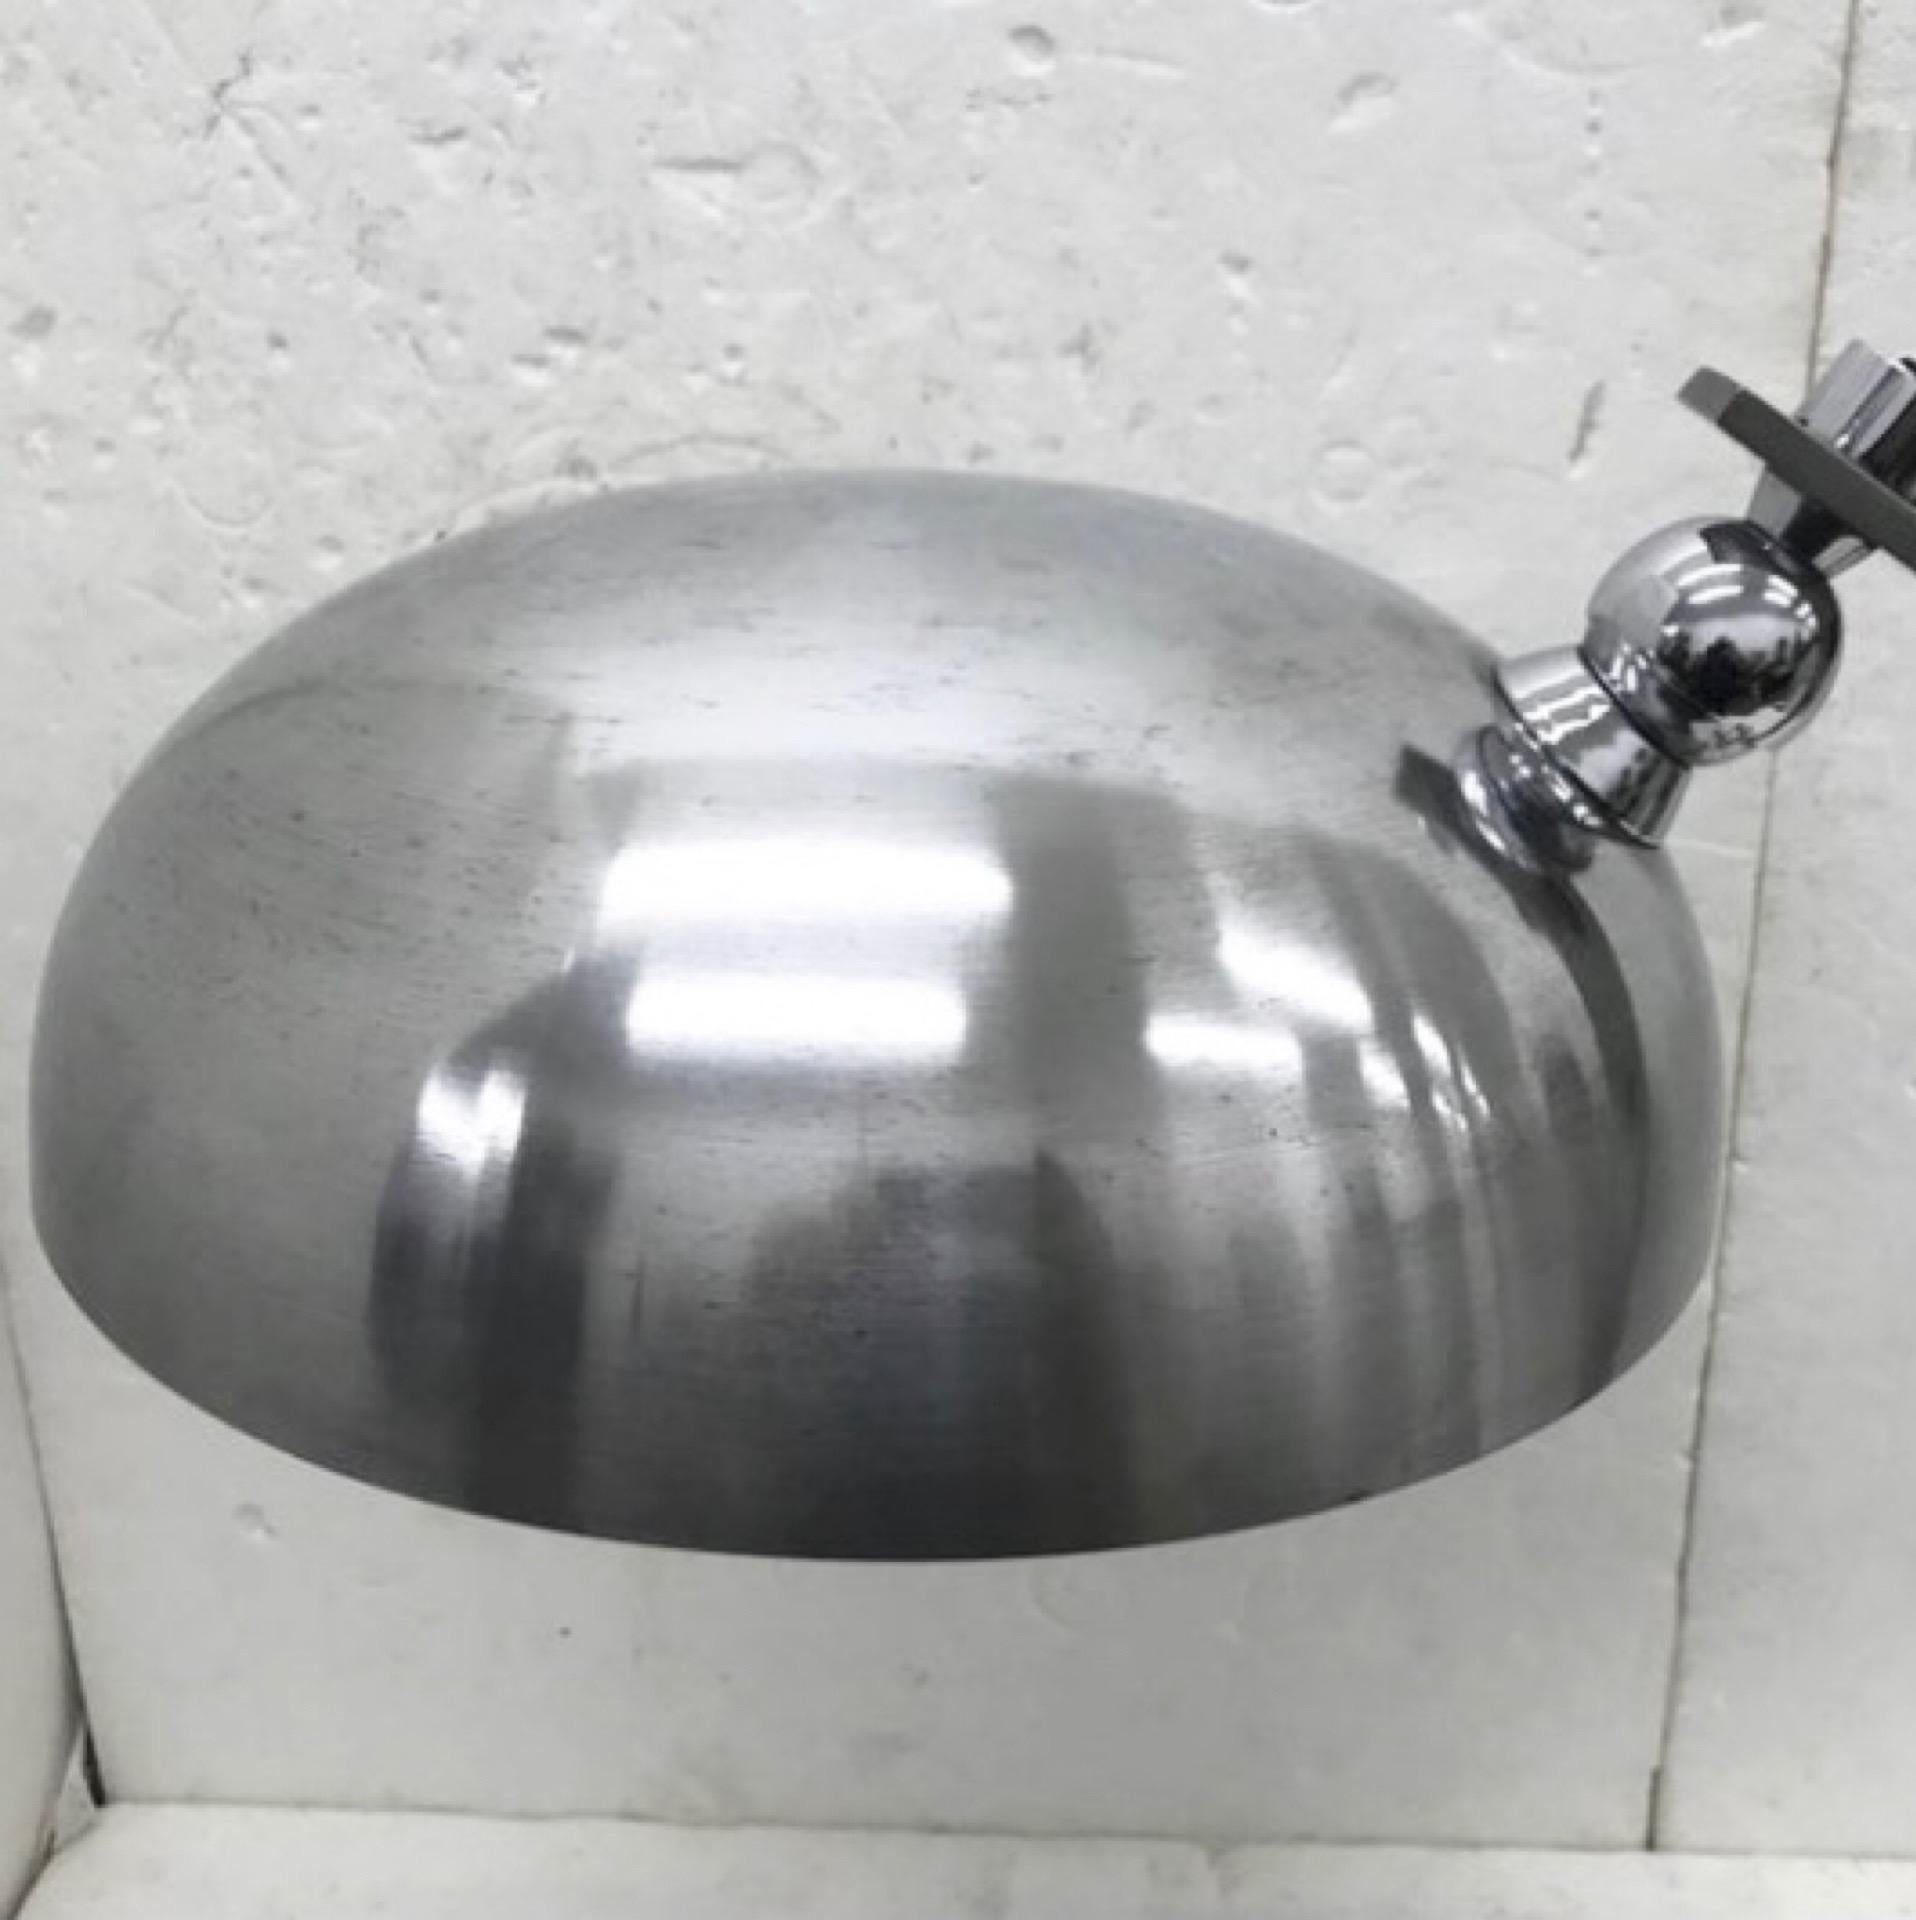 Une lampe de table italienne conçue et fabriquée dans les années 70, souvent attribuée à Arredoluce. La bonne qualité de cette lampe de table de l'ère spatiale le confirme. Elle fonctionne en 110-240 volts et nécessite une ampoule ordinaire e27.